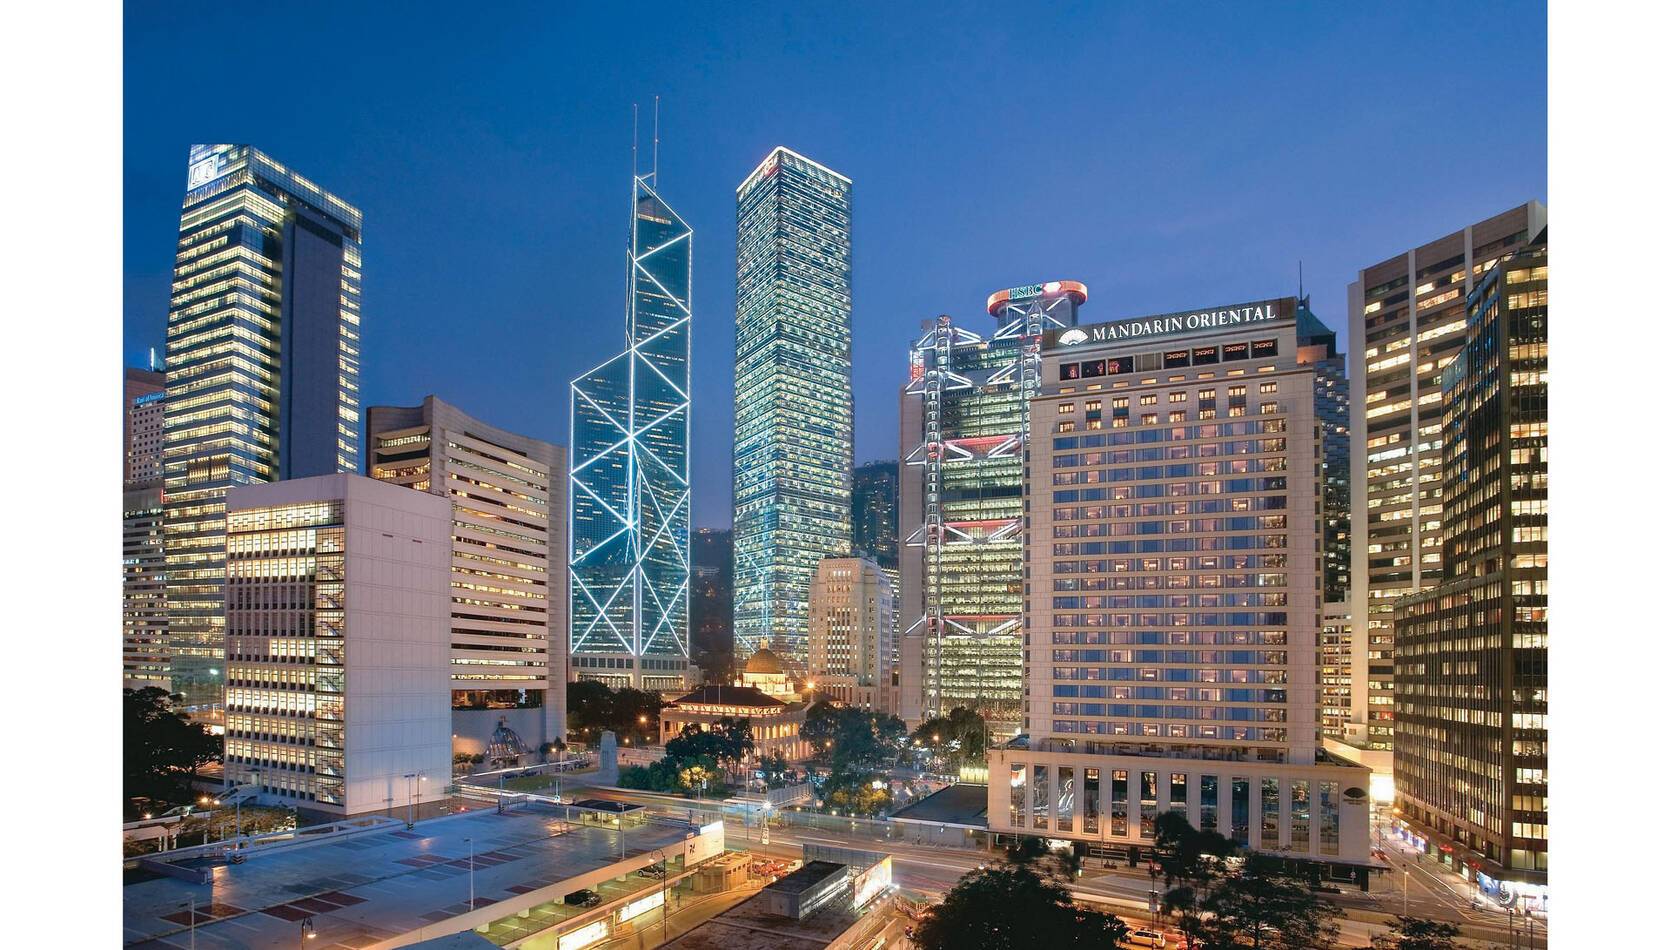 Mandarin Oriental Hong Kong exterieur